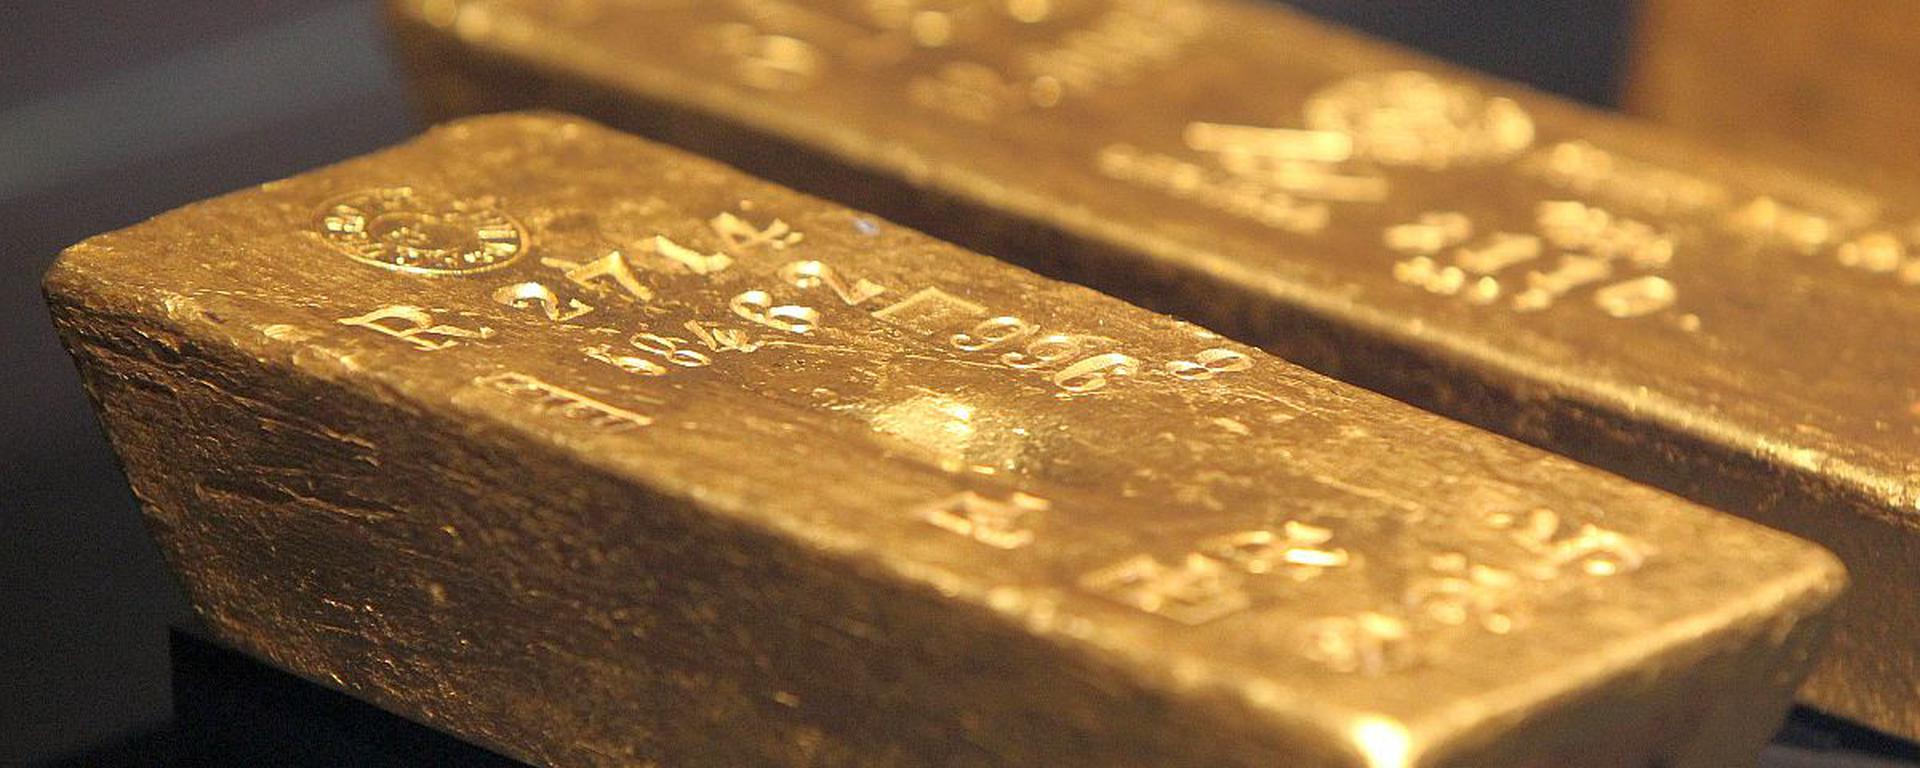 ¿Qué está influyendo para que el precio del oro y del petróleo se encuentren al alza?